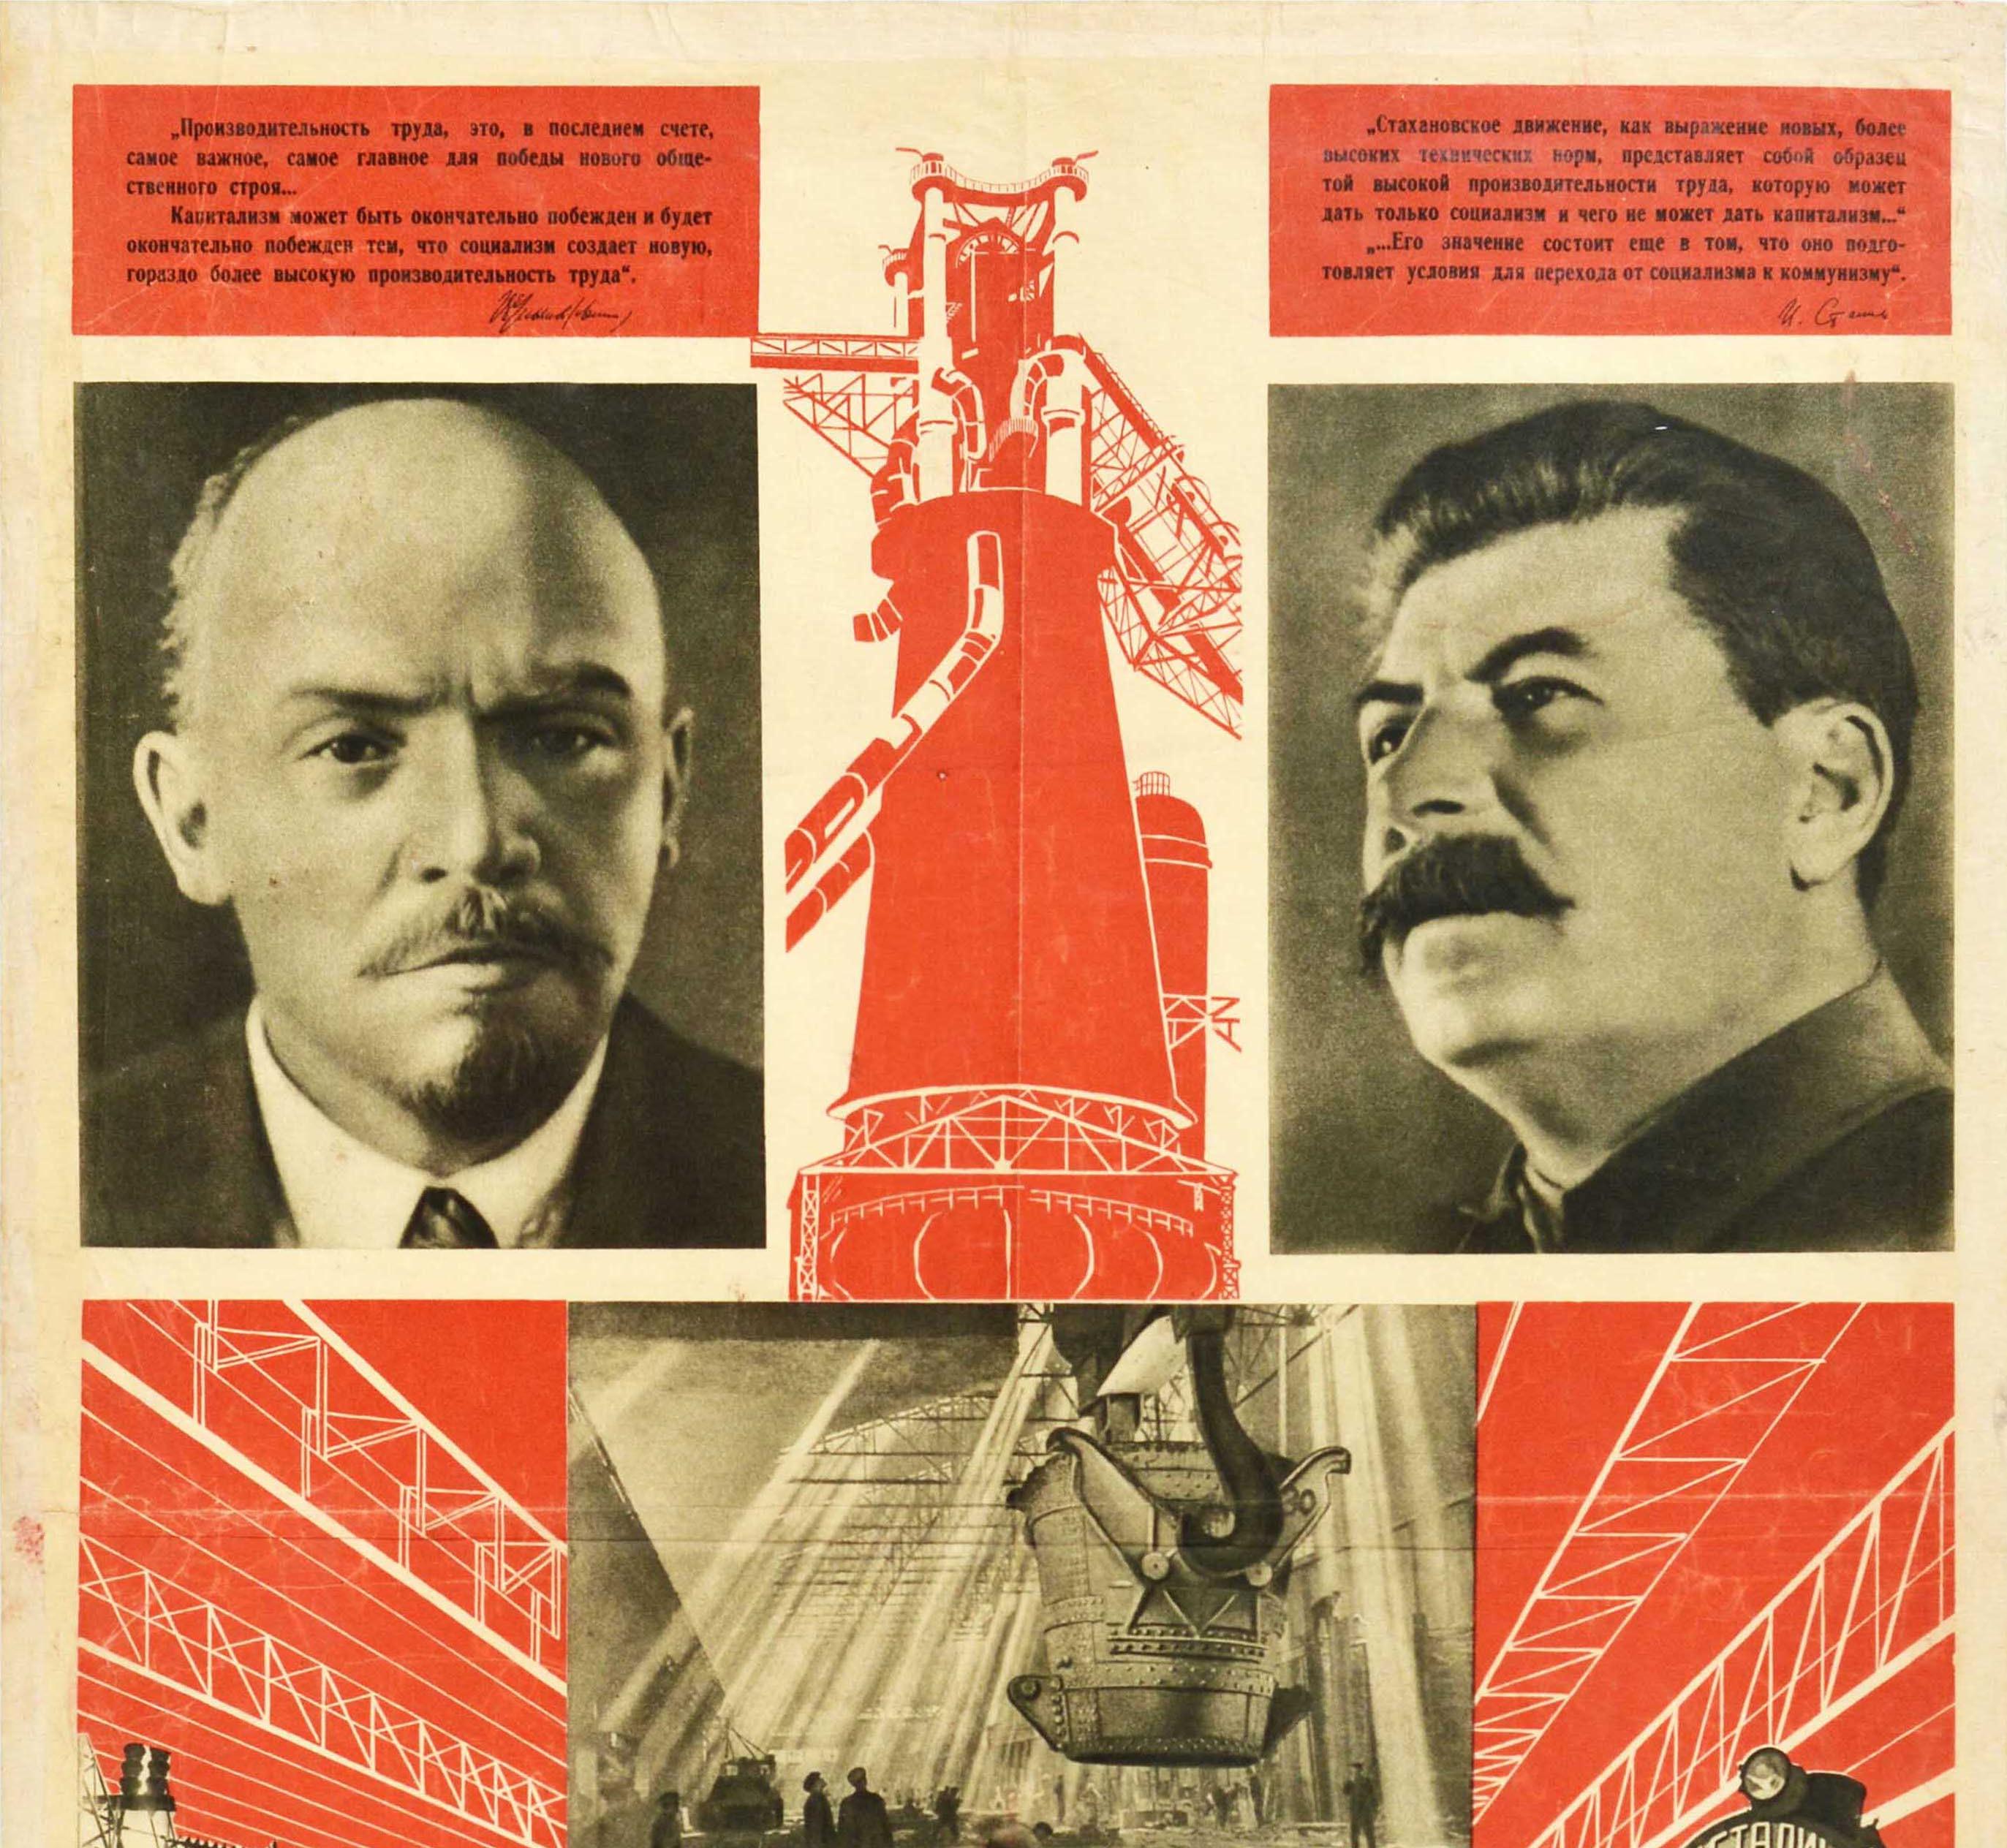 Affiche de propagande soviétique originale d'époque - L'industrie socialiste est devenue la seule forme d'industrie en URSS - comportant des photos en noir et blanc d'ouvriers dans des usines industrielles avec des dessins au trait rouge et blanc et